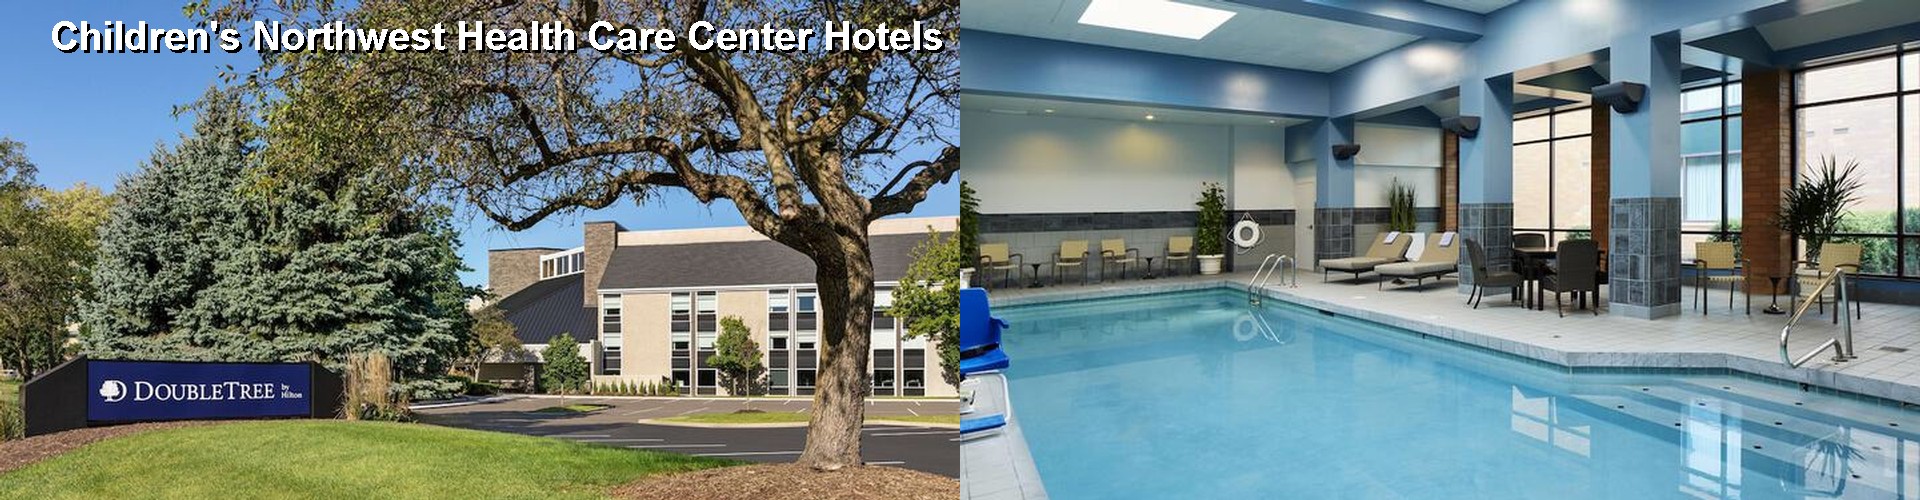 5 Best Hotels near Children's Northwest Health Care Center